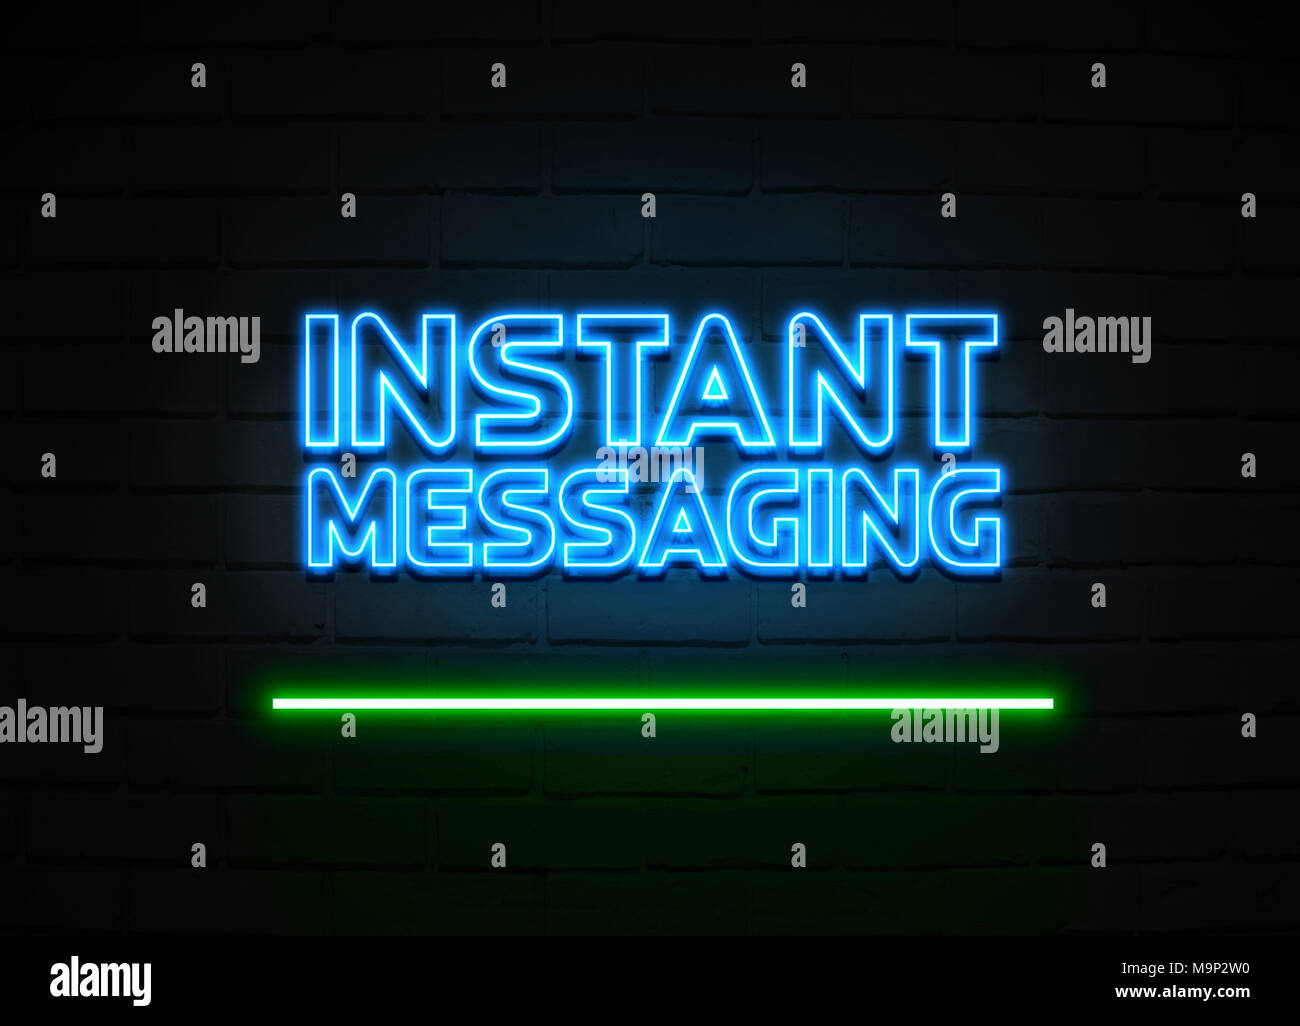 La messagerie instantanée en néon - Glowing Neon Sign sur mur brickwall - rendu 3D illustration libres de droits. Banque D'Images